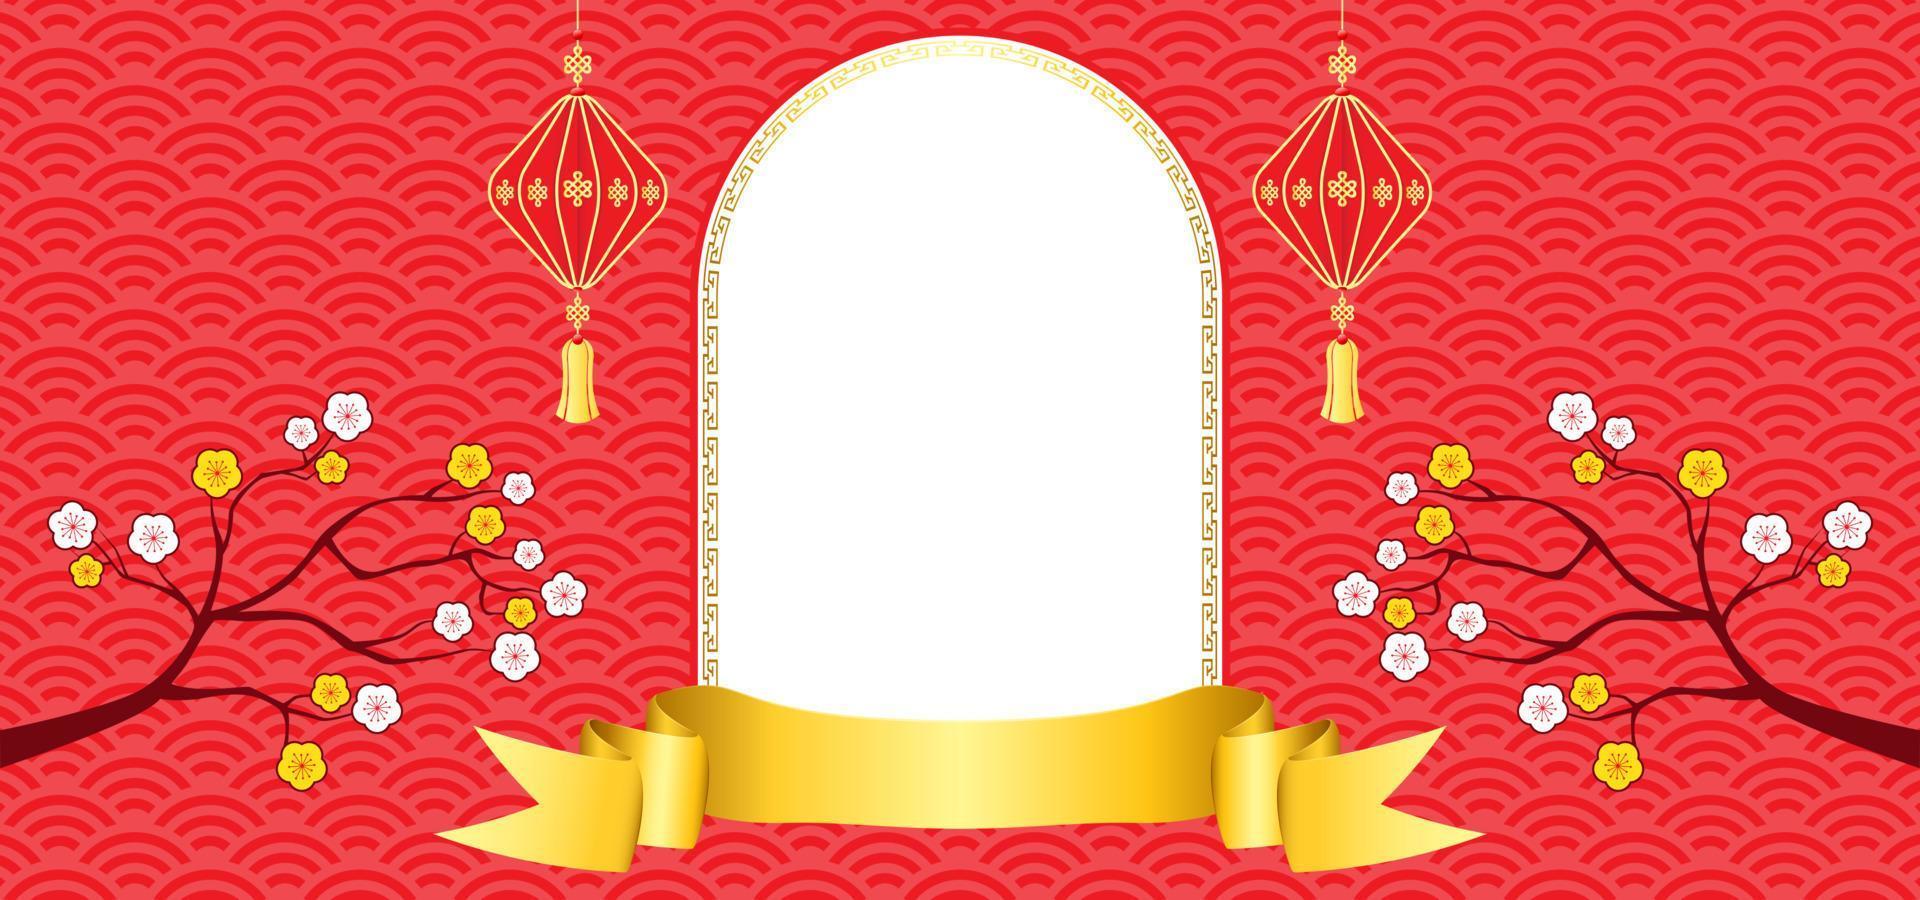 fondo de año nuevo chino con espacio en blanco para texto. tema de fondo rojo y dorado con textura de patrón, cinta, flor y linterna. ilustración vectorial vector